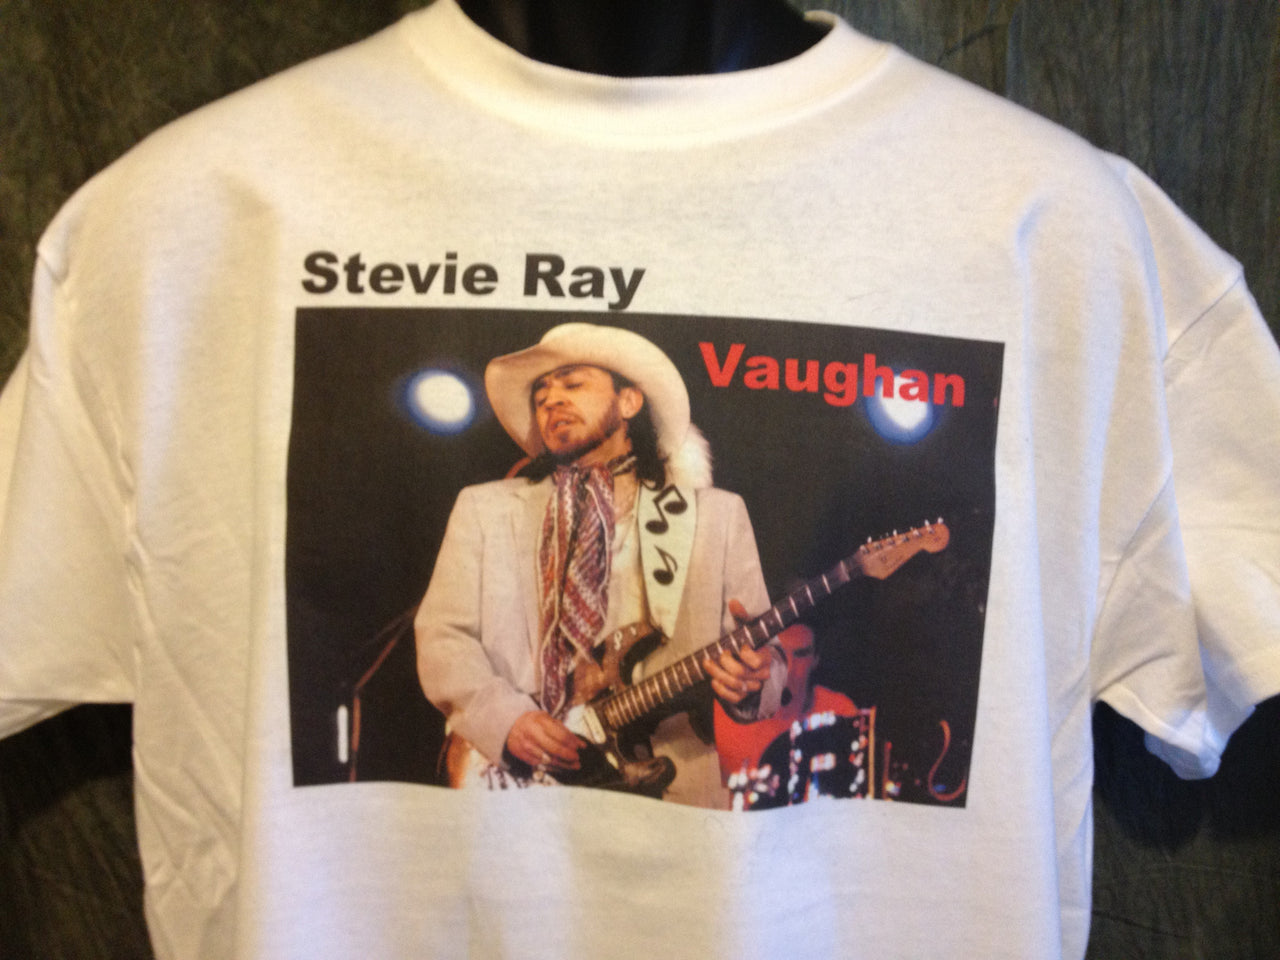 Stevie Ray Vaughan Music Note Guitar Strap Tshirt - TshirtNow.net - 2